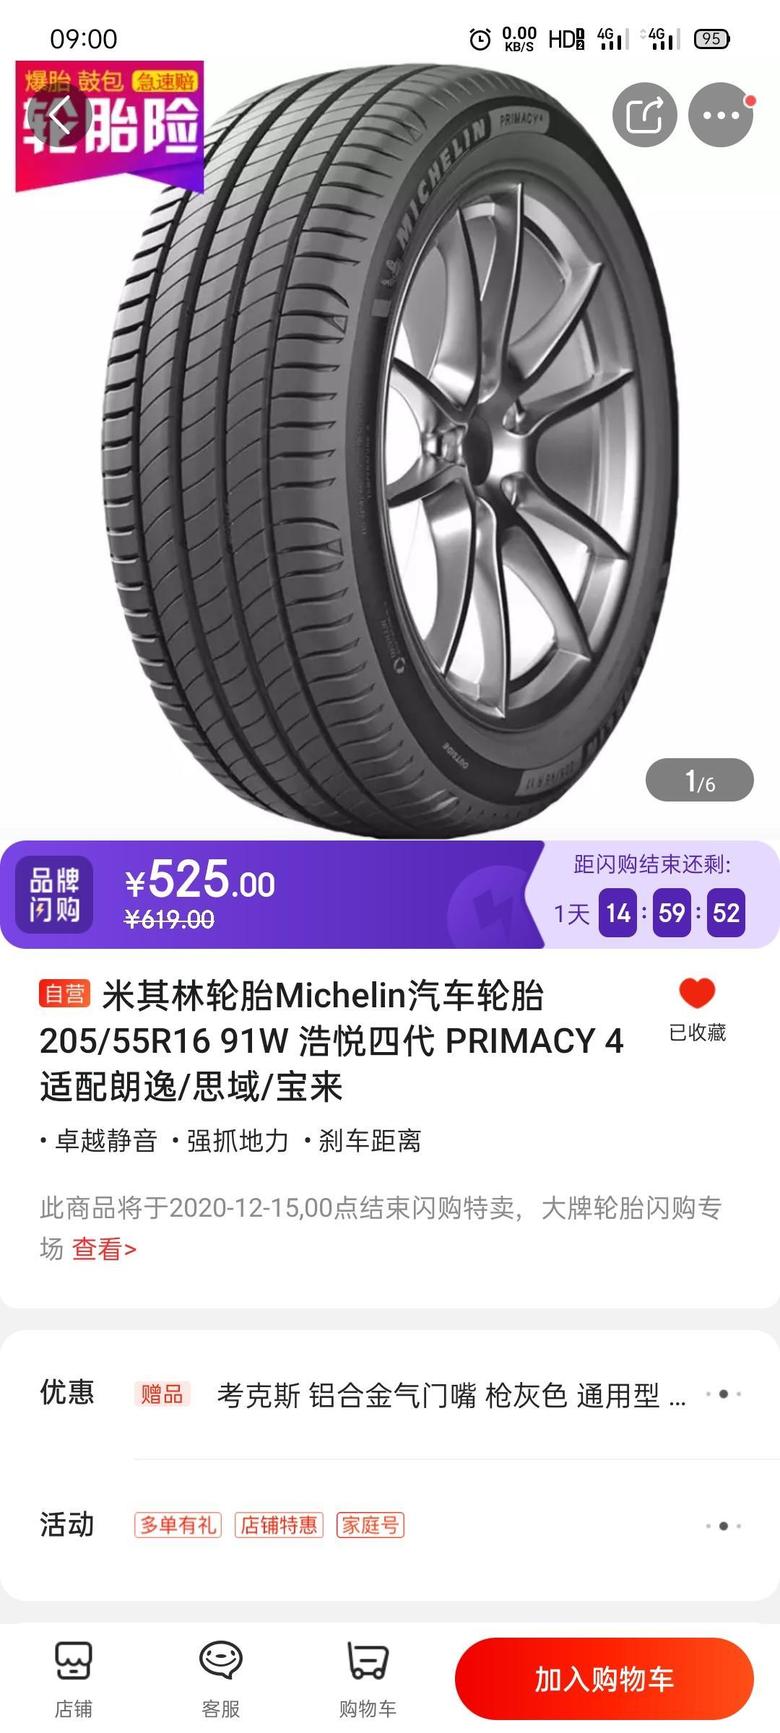 新买的帝豪20向上款的，感觉胎噪有点大了，我想去换这款米其林的轮胎，有用吗？